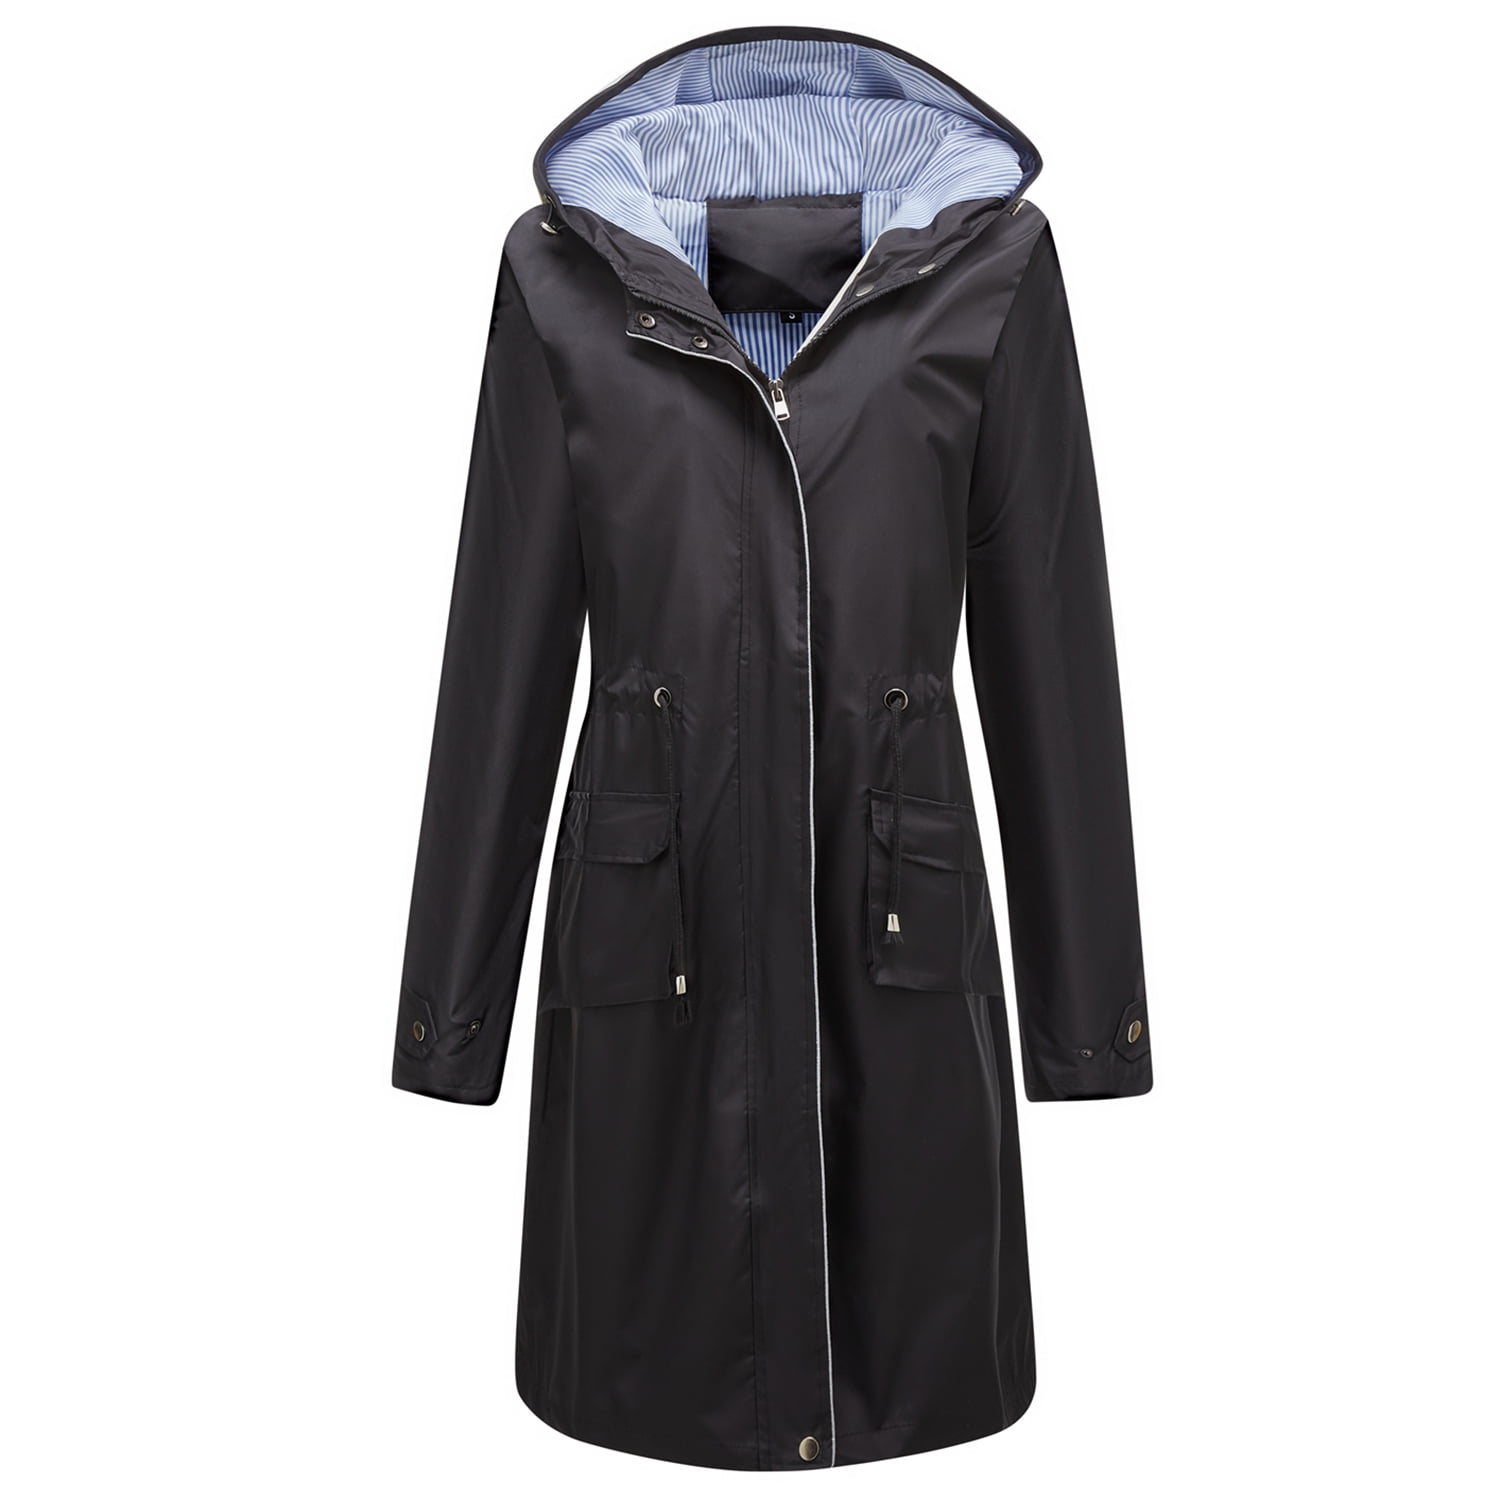  CTEEGC Womens Rain Jacket Waterproof Long Hooded